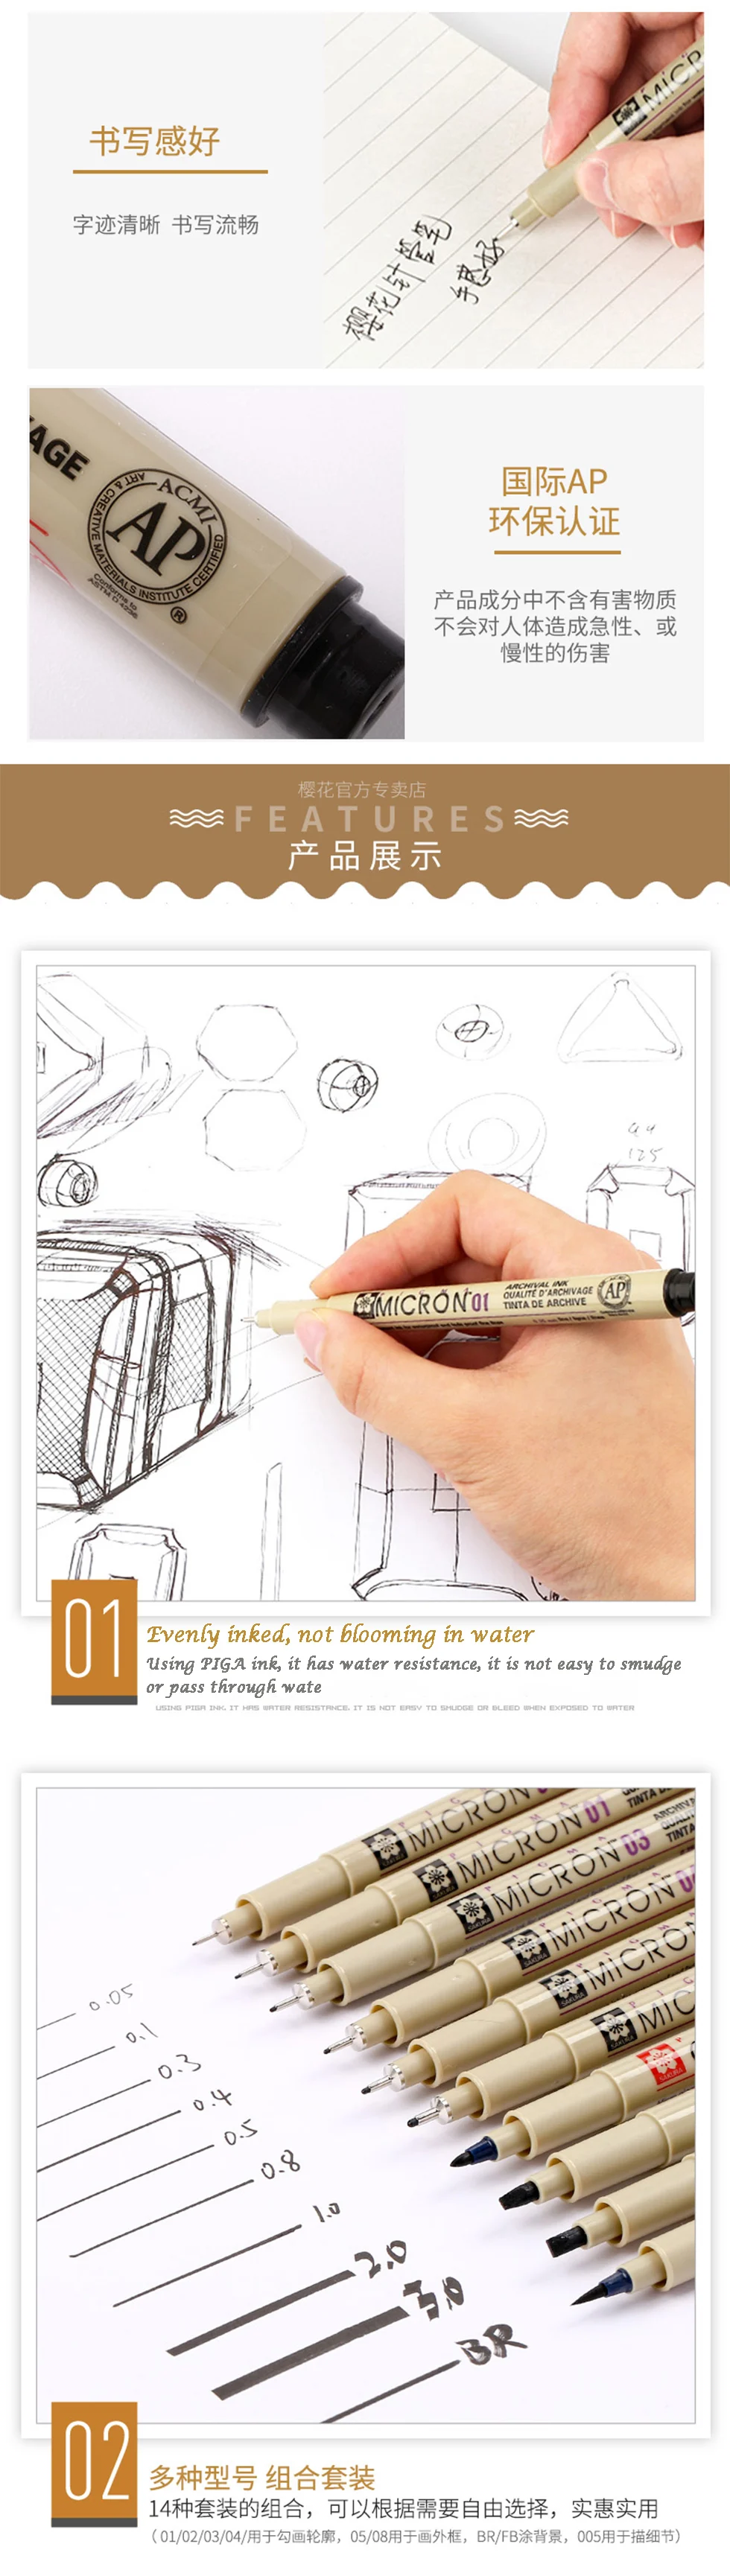 Набор Игл SAKURA, водостойкая ручка для рисования, манга, Pigma, микрон, кисть, ручки, крючок, линия, графические маркеры, товары для рукоделия